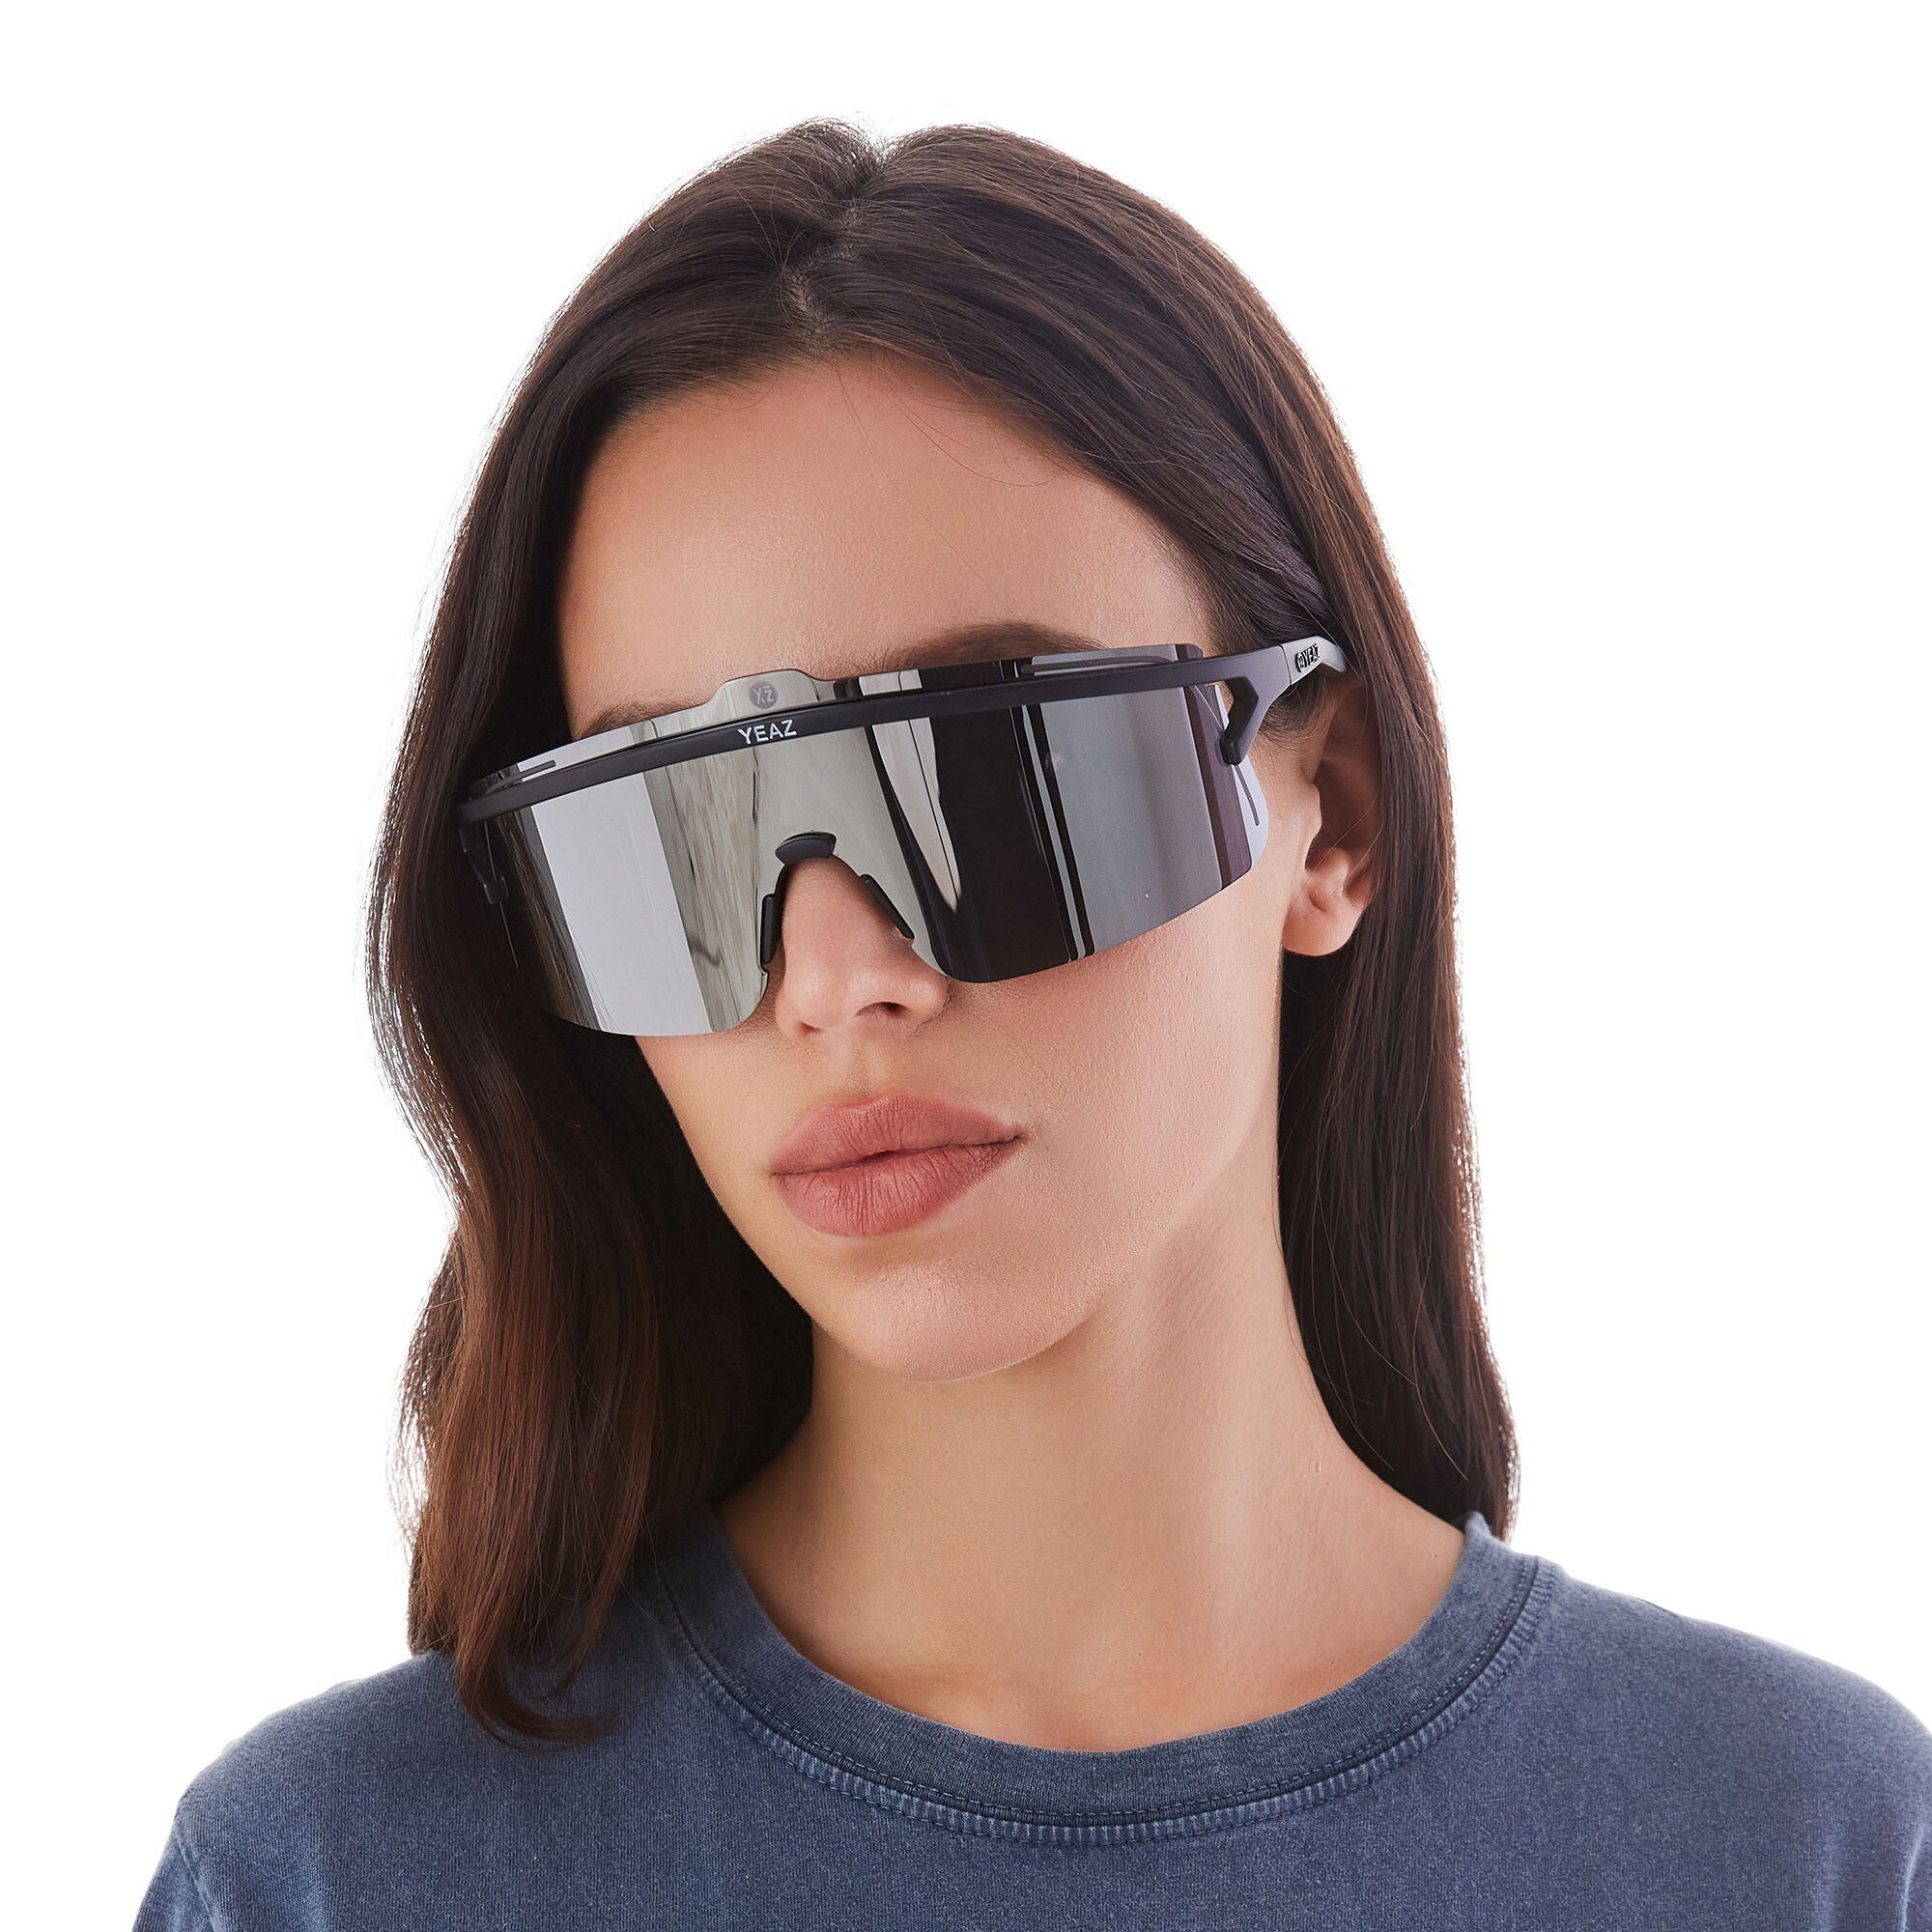 YEAZ Sportbrille SUNSHADE sport-sonnenbrille schwarz Komfort / silber und Style Sicht, black/silver, perfekte Erlebe